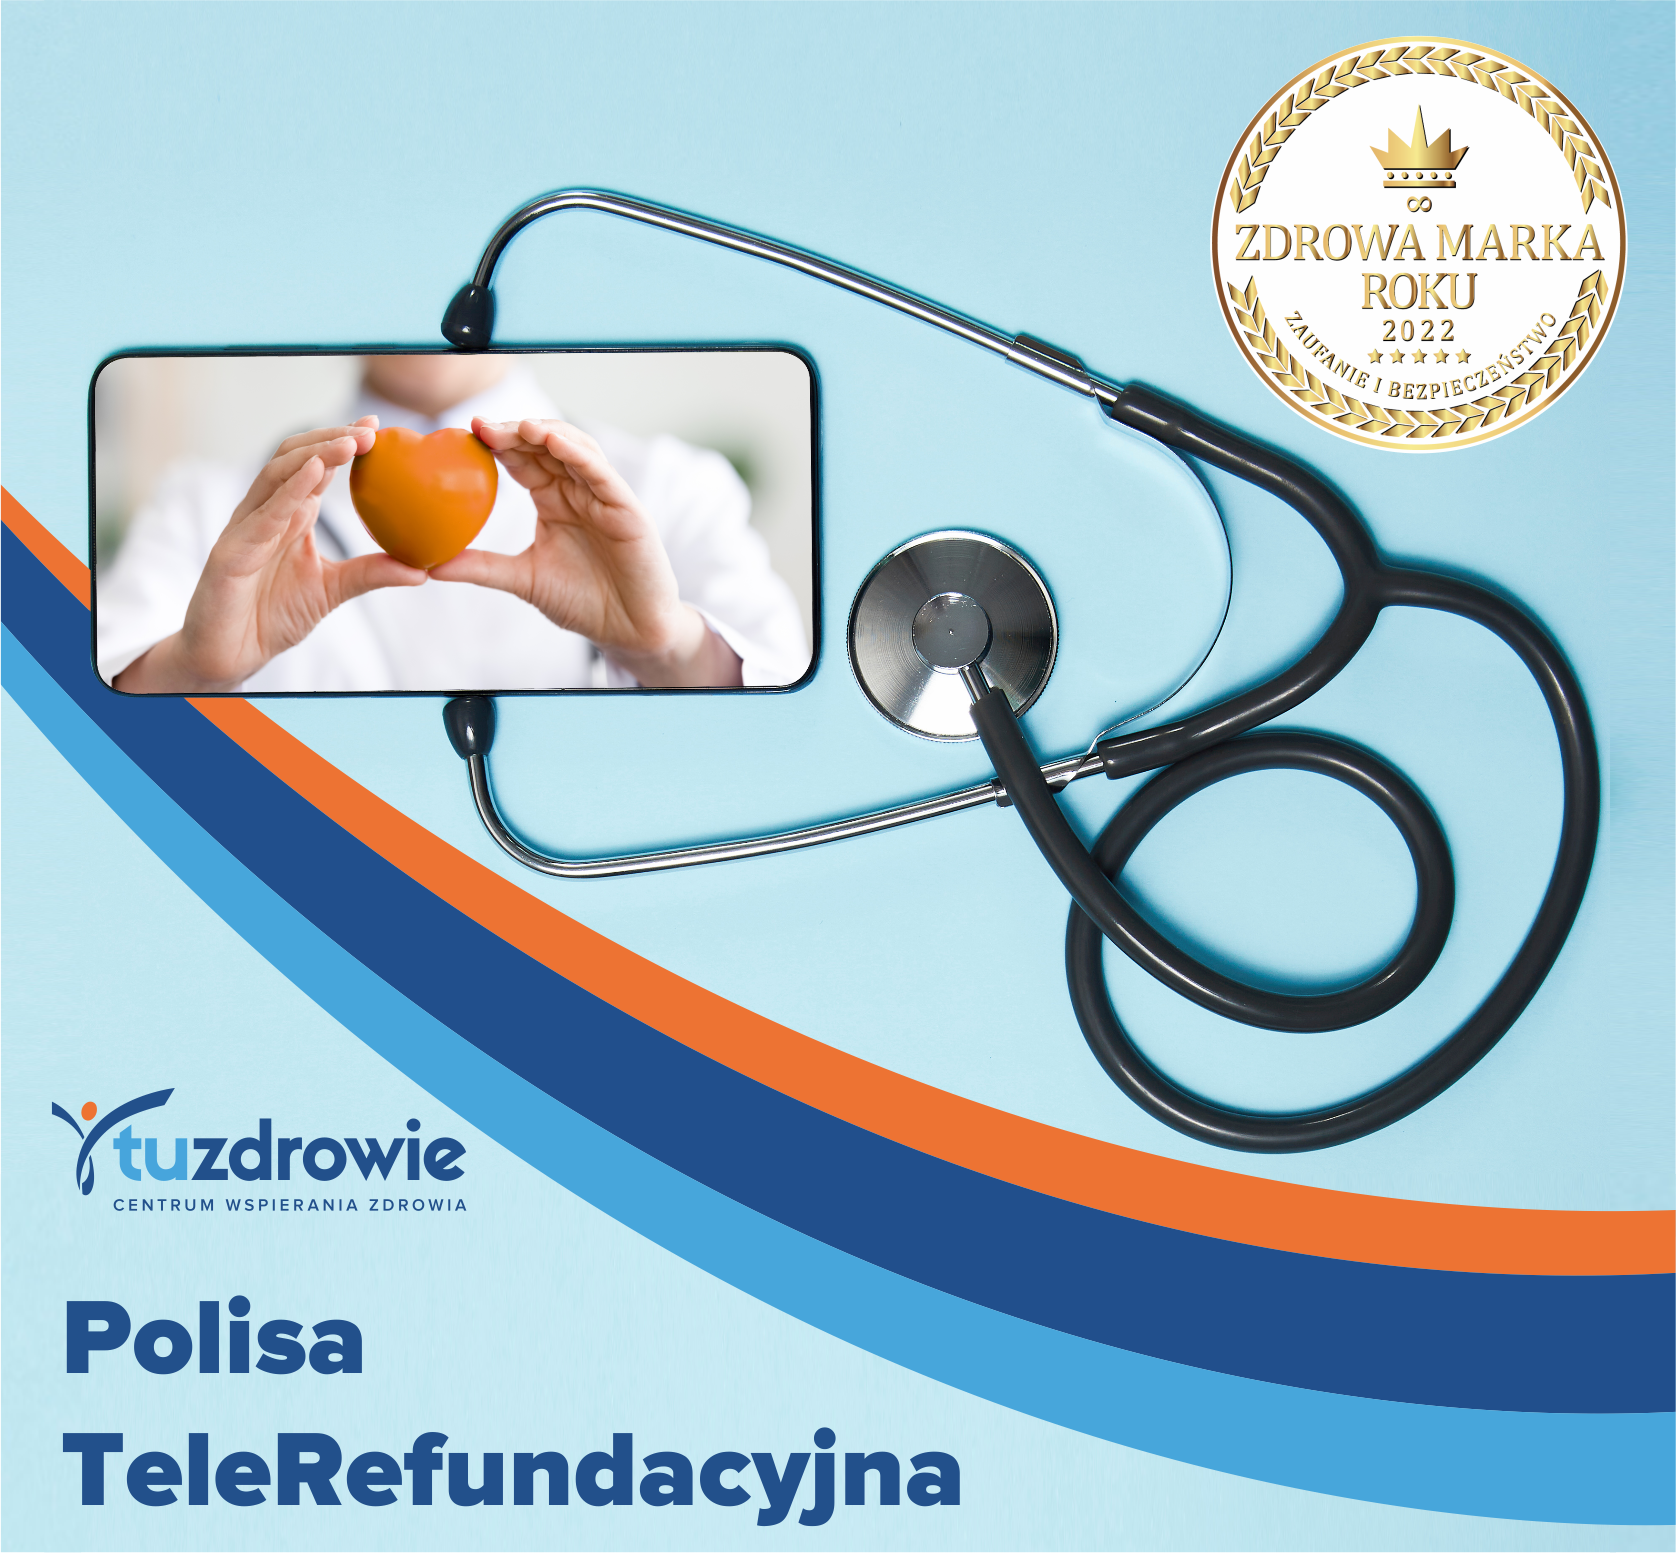 Polisa TeleRefundacyjna to ubezpieczenie zdrowotne, które umożliwia pacjentom dostęp do całego rynku usług medycznych!